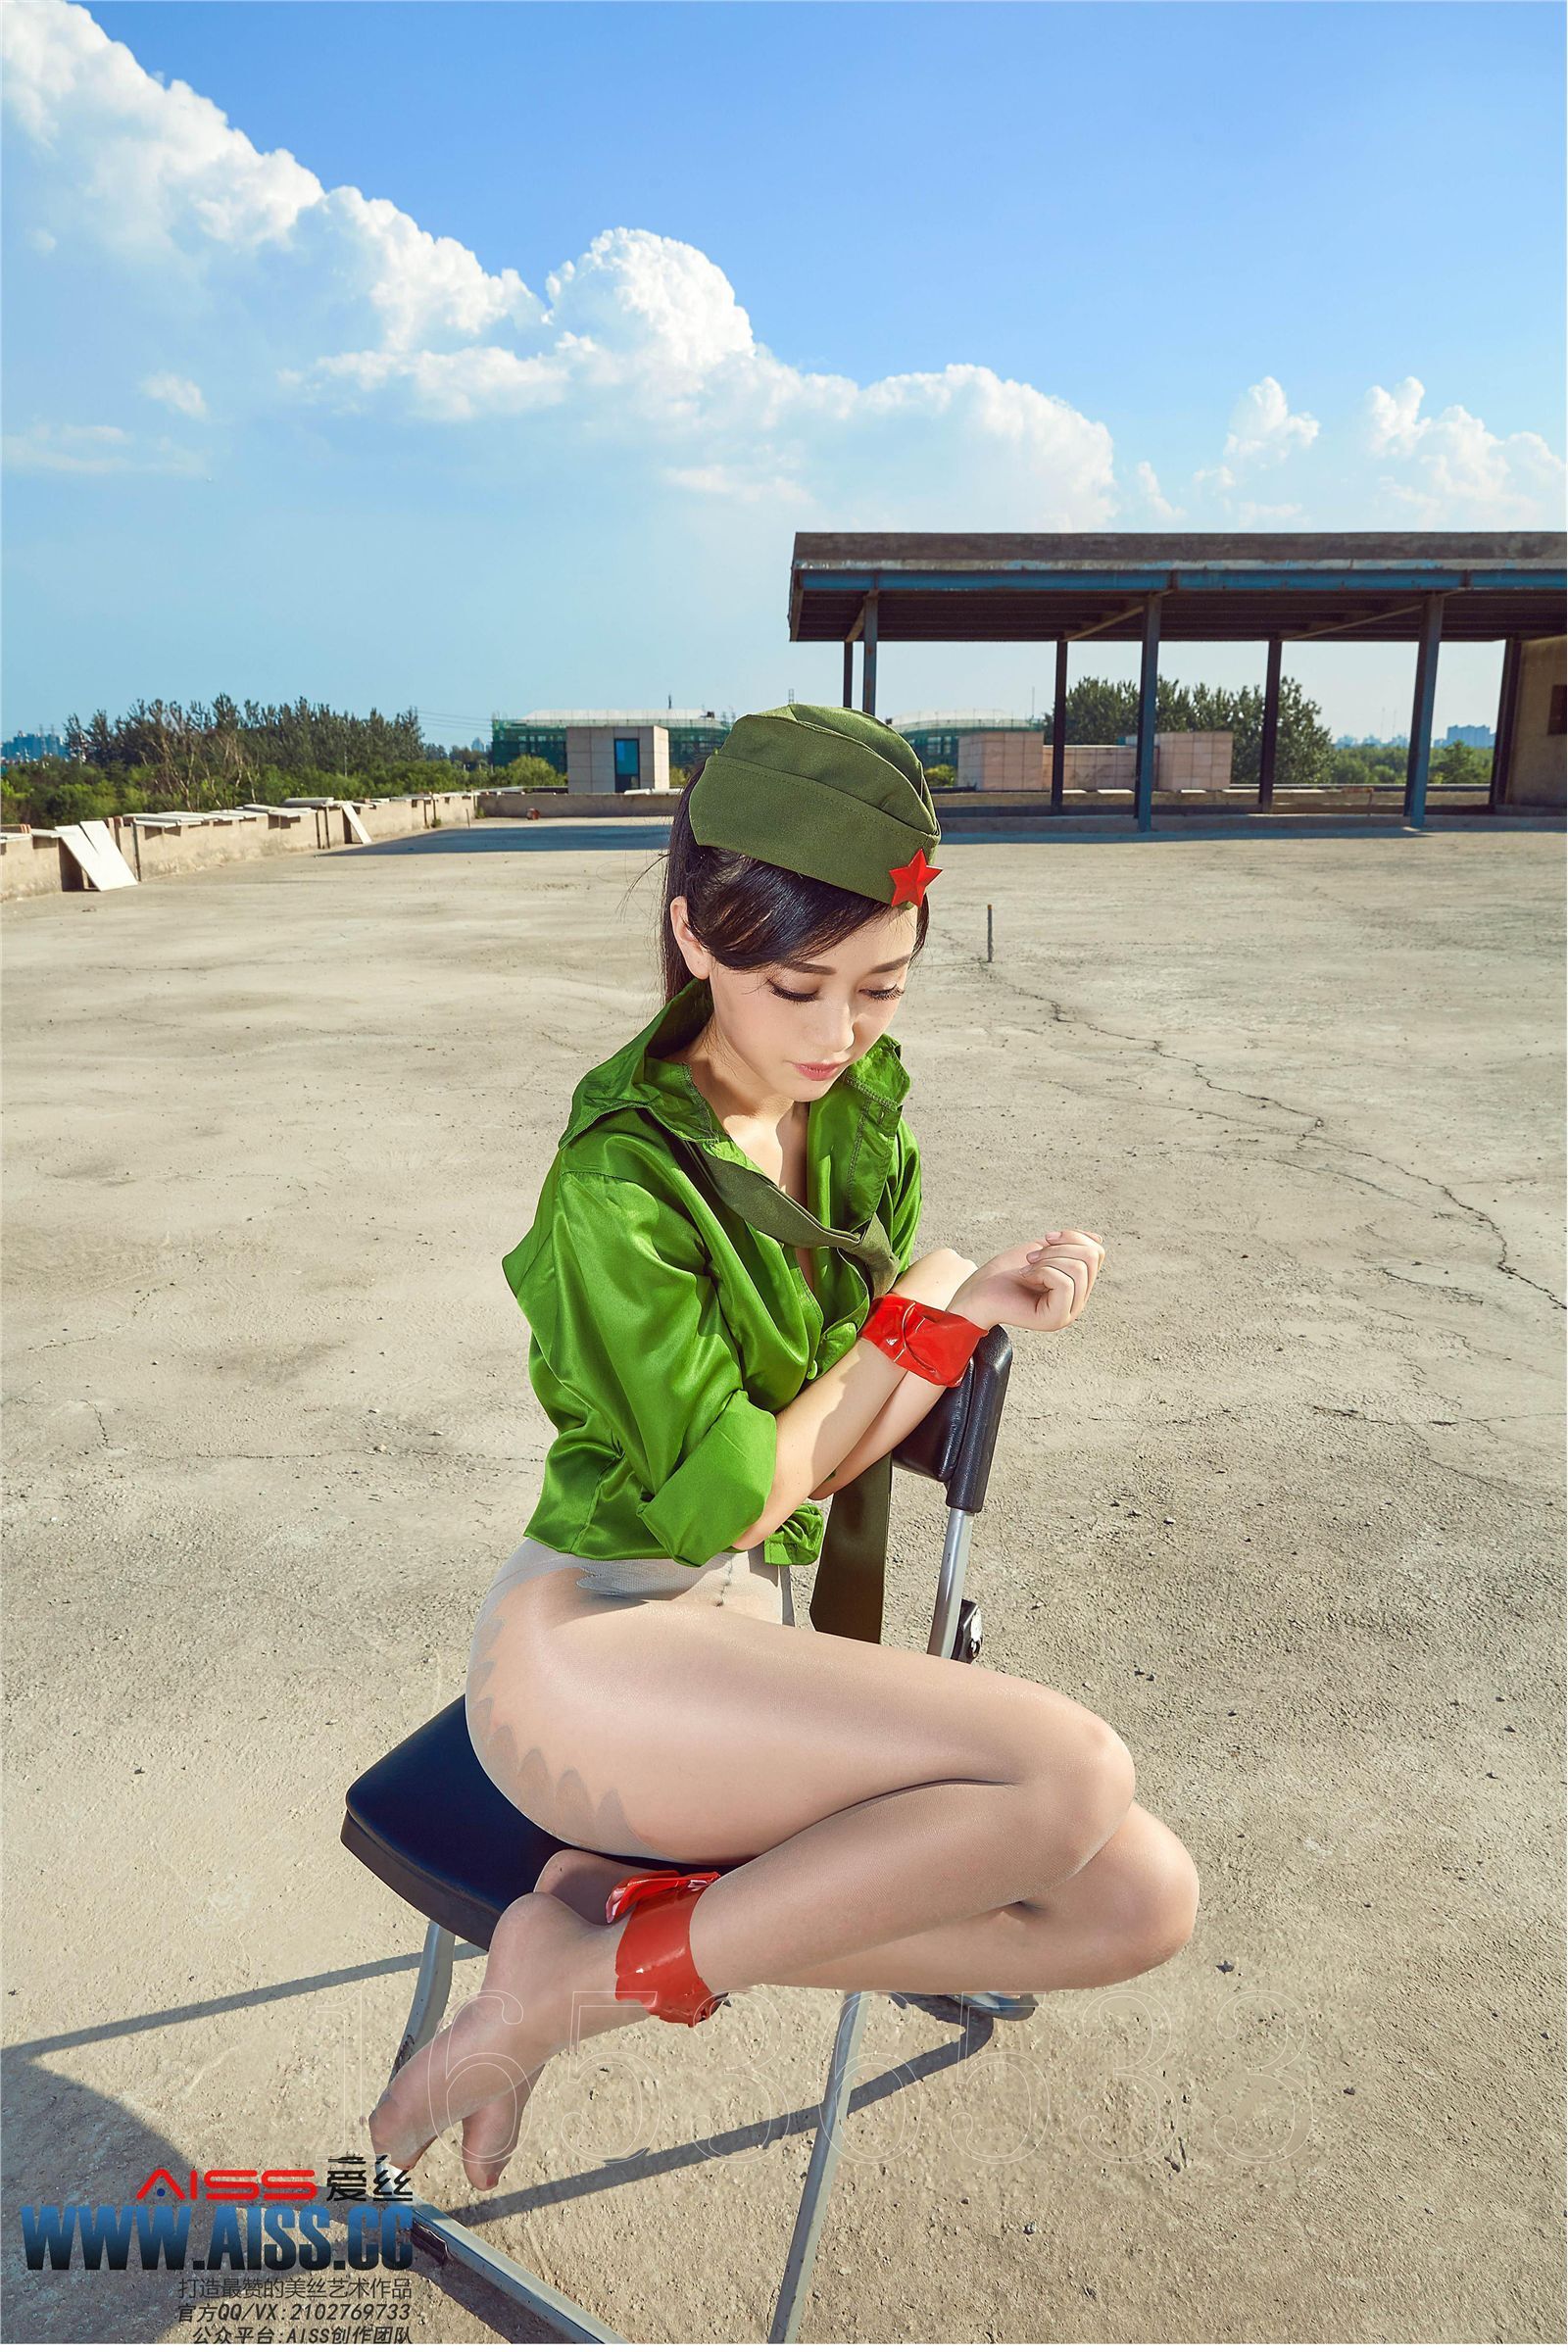 [AISs love] silk stockings leg shooting 4109 Zhao Xiaomi